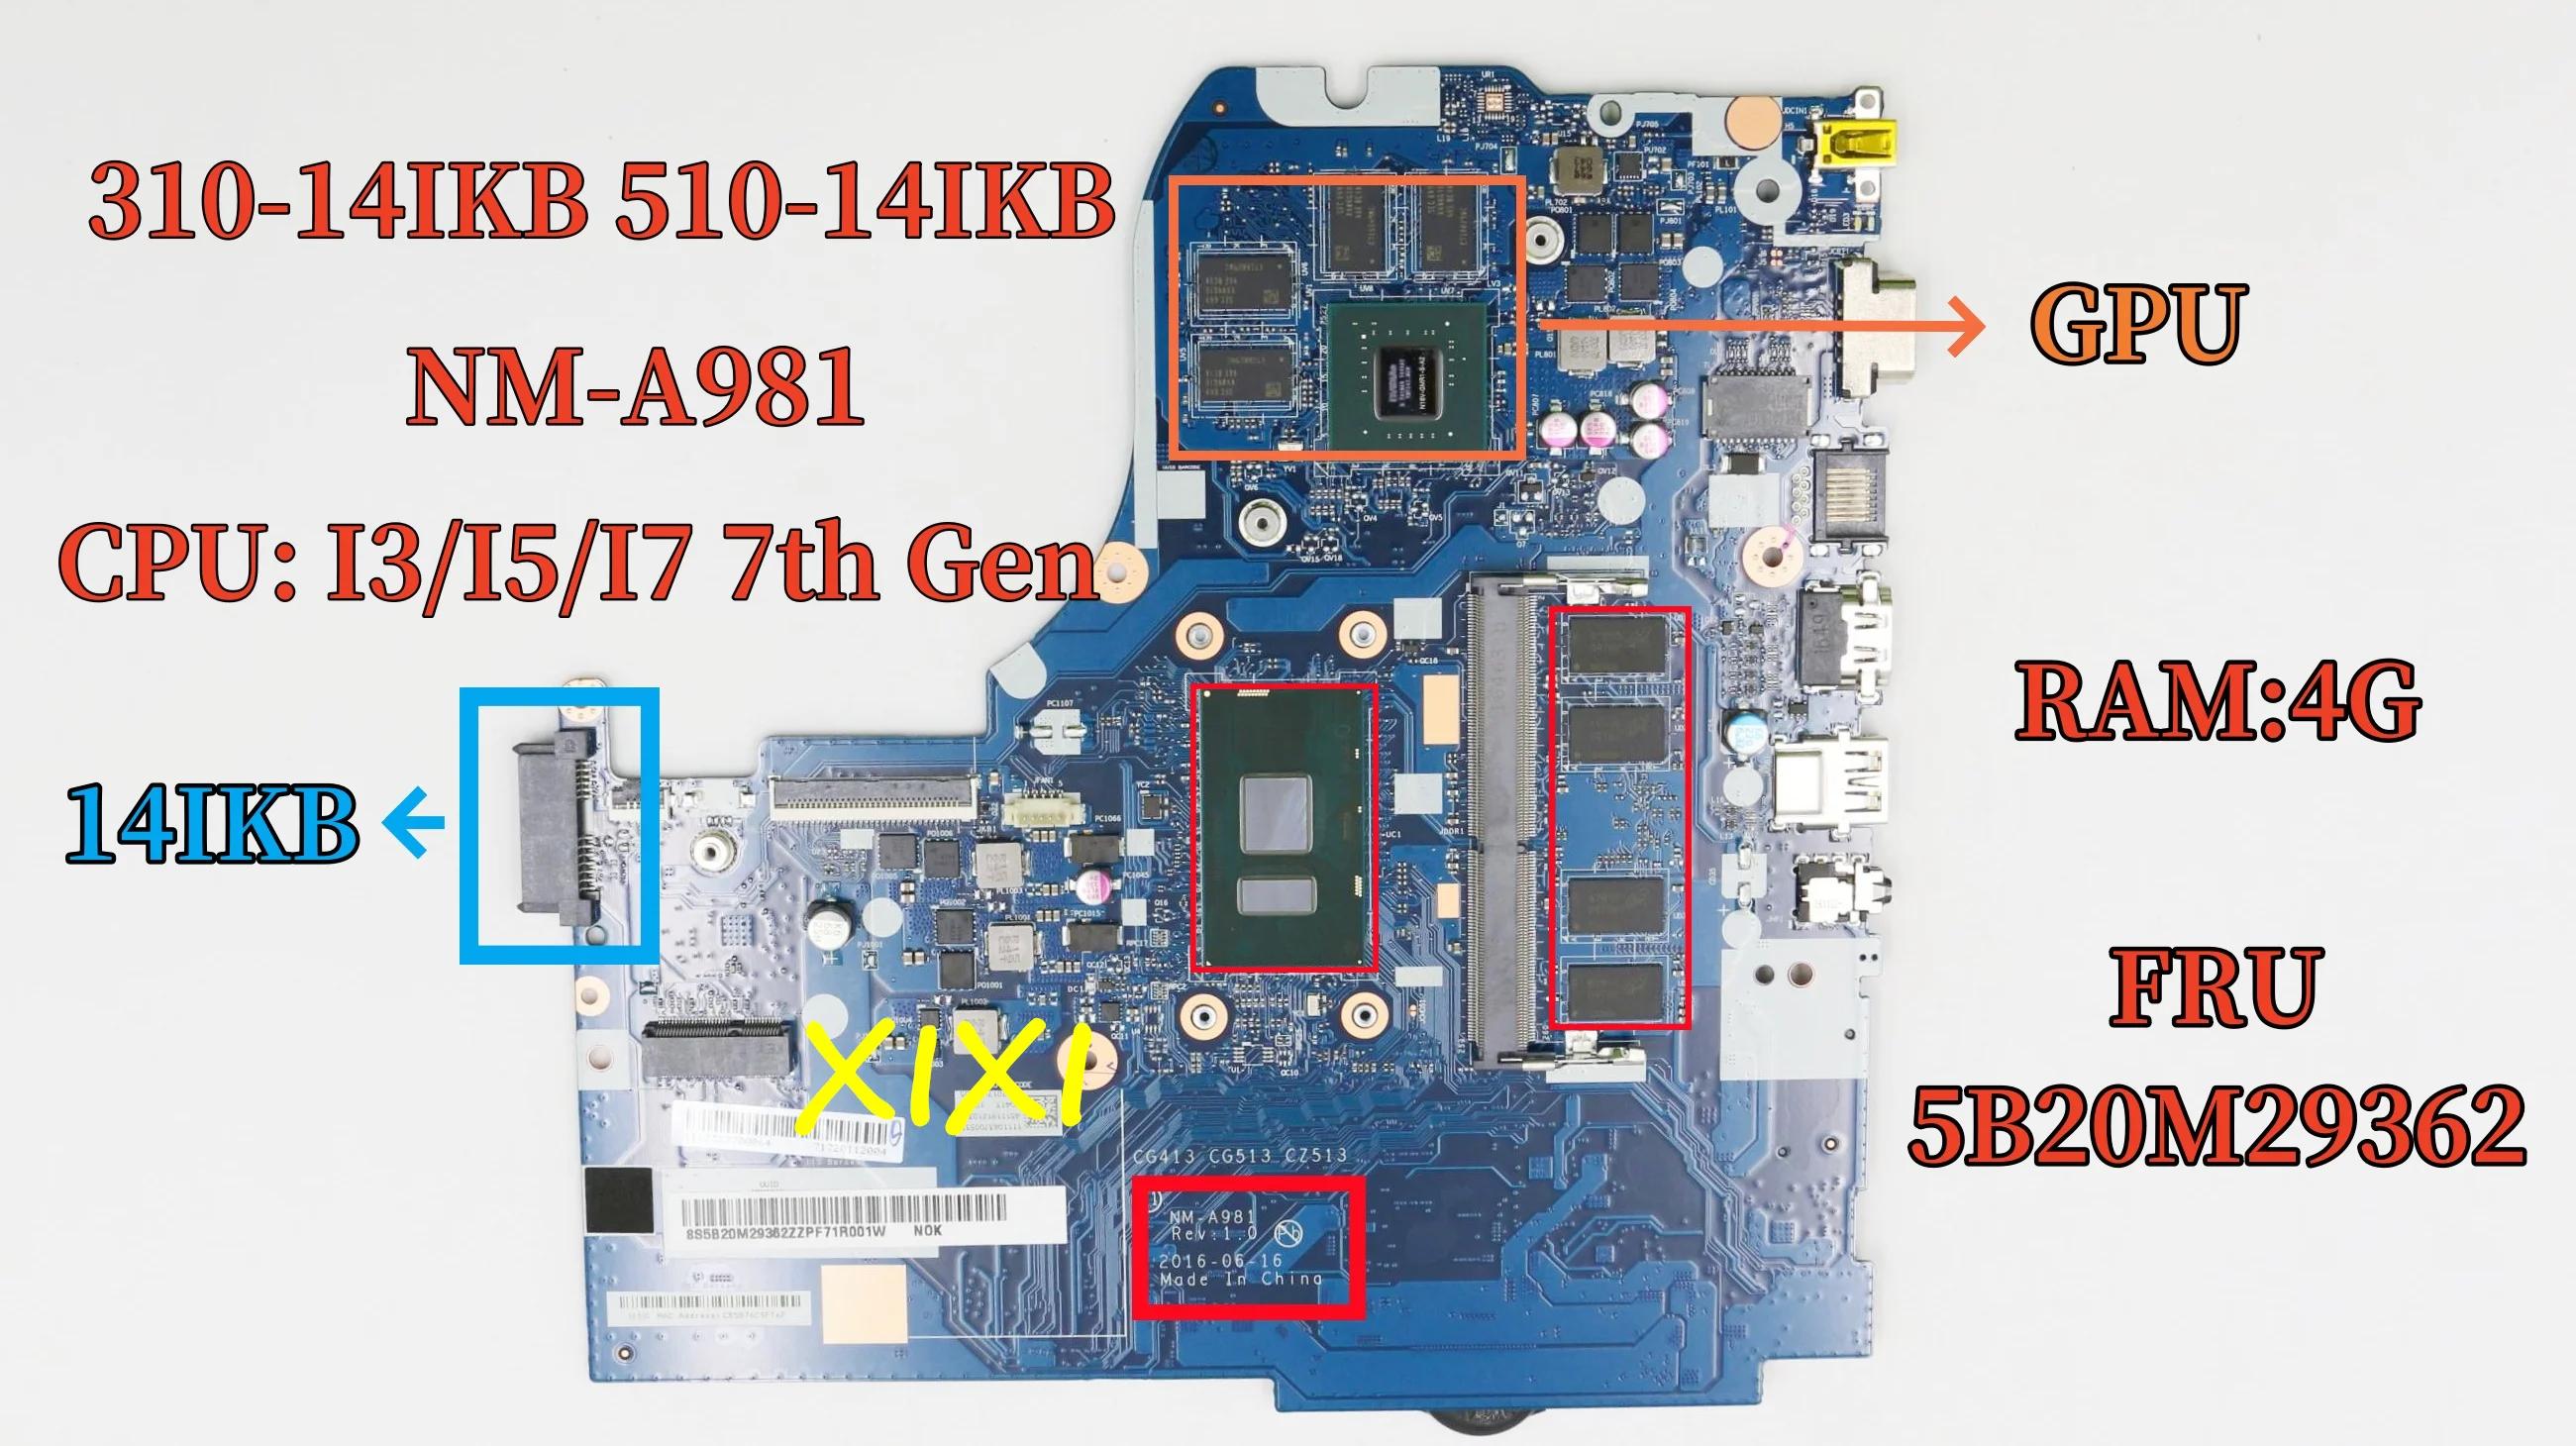  NM-A981 NM-A751 κ, Ʈ , I3, I5, I7, 7th GPU RAM, 4G, 5B20M29362, 100% OK, 310-14IKB 510-14IKB